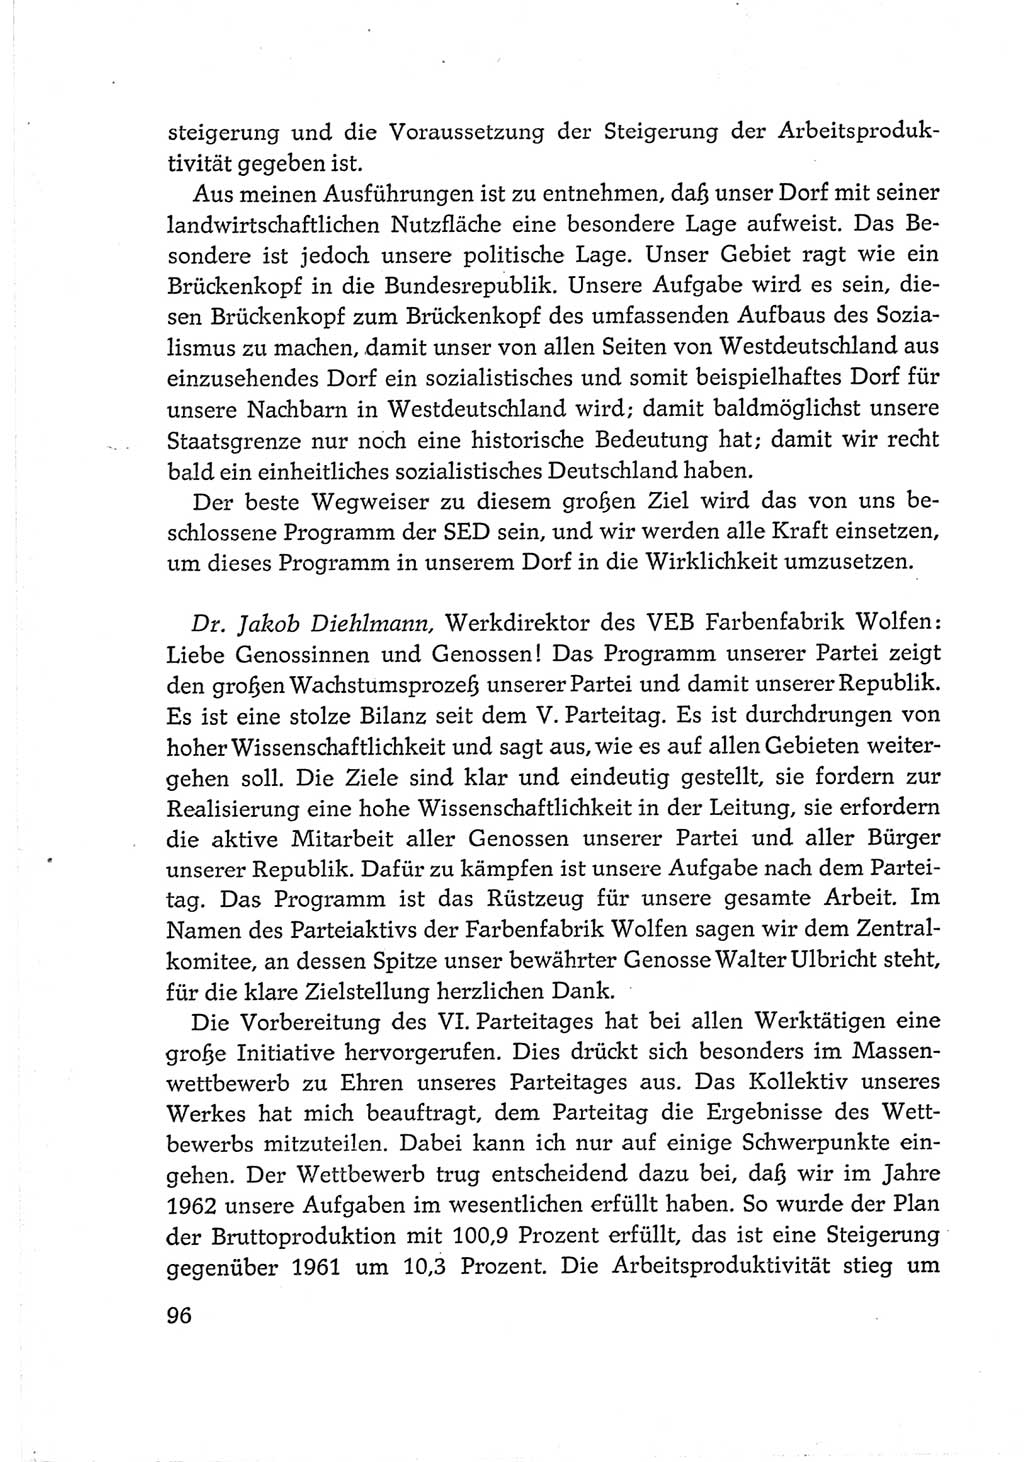 Protokoll der Verhandlungen des Ⅵ. Parteitages der Sozialistischen Einheitspartei Deutschlands (SED) [Deutsche Demokratische Republik (DDR)] 1963, Band Ⅲ, Seite 96 (Prot. Verh. Ⅵ. PT SED DDR 1963, Bd. Ⅲ, S. 96)